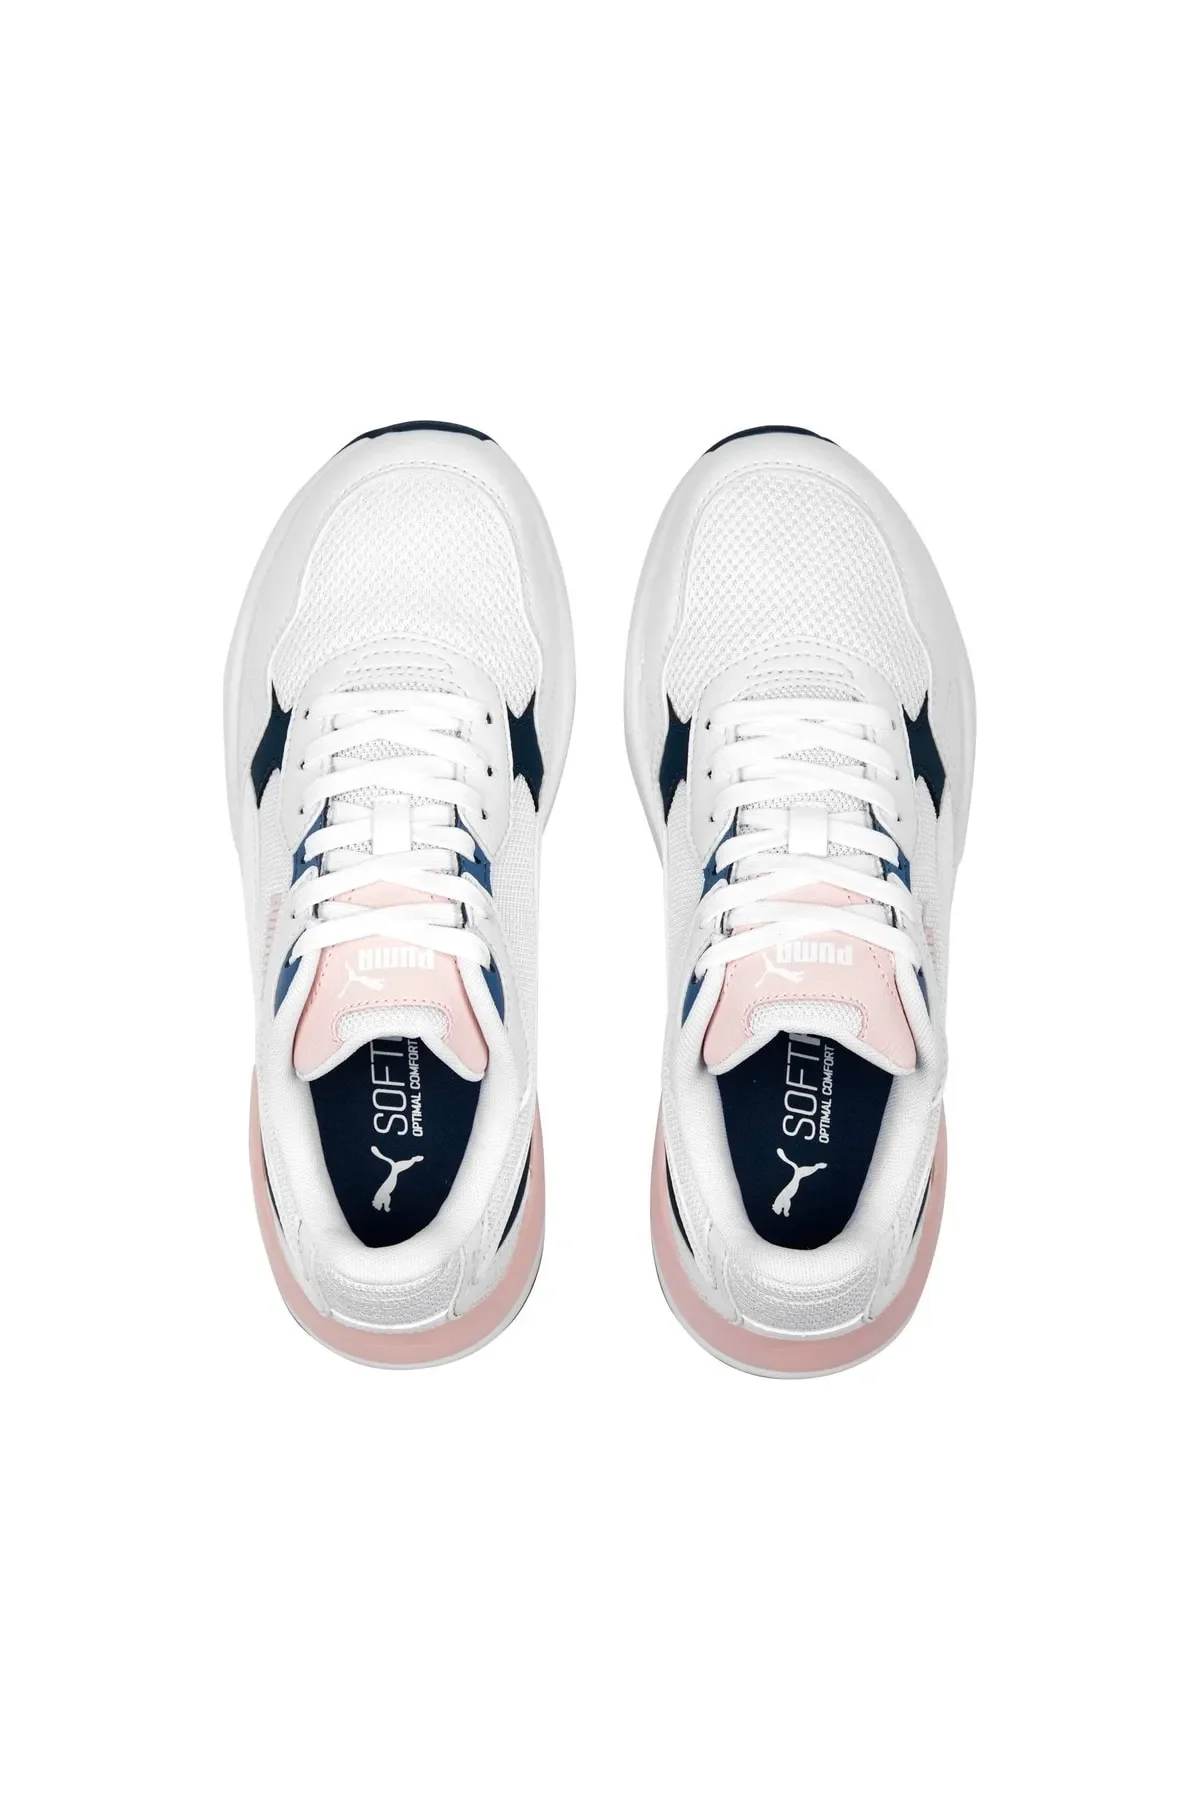 X-Ray Speed Lite - Kadın Sneaker Ayakkabı 384639 -Beyaz - 3